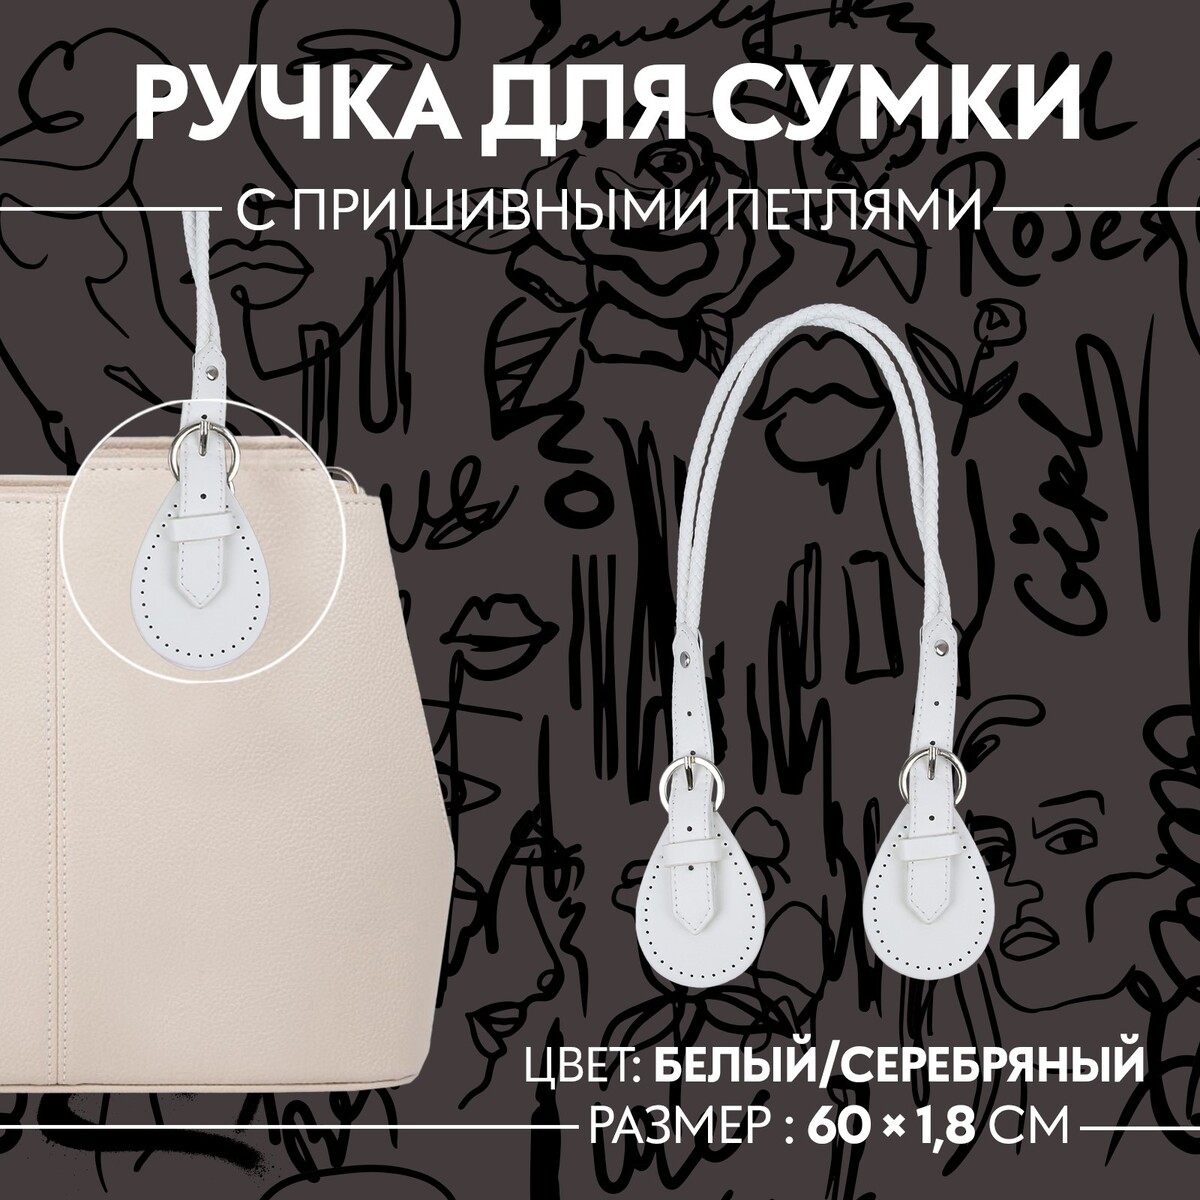 Ручка для сумки, шнуры, 60 × 1,8 см, с пришивными петлями 5,8 см, цвет белый/серебряный белый а т3 серебряный голубь